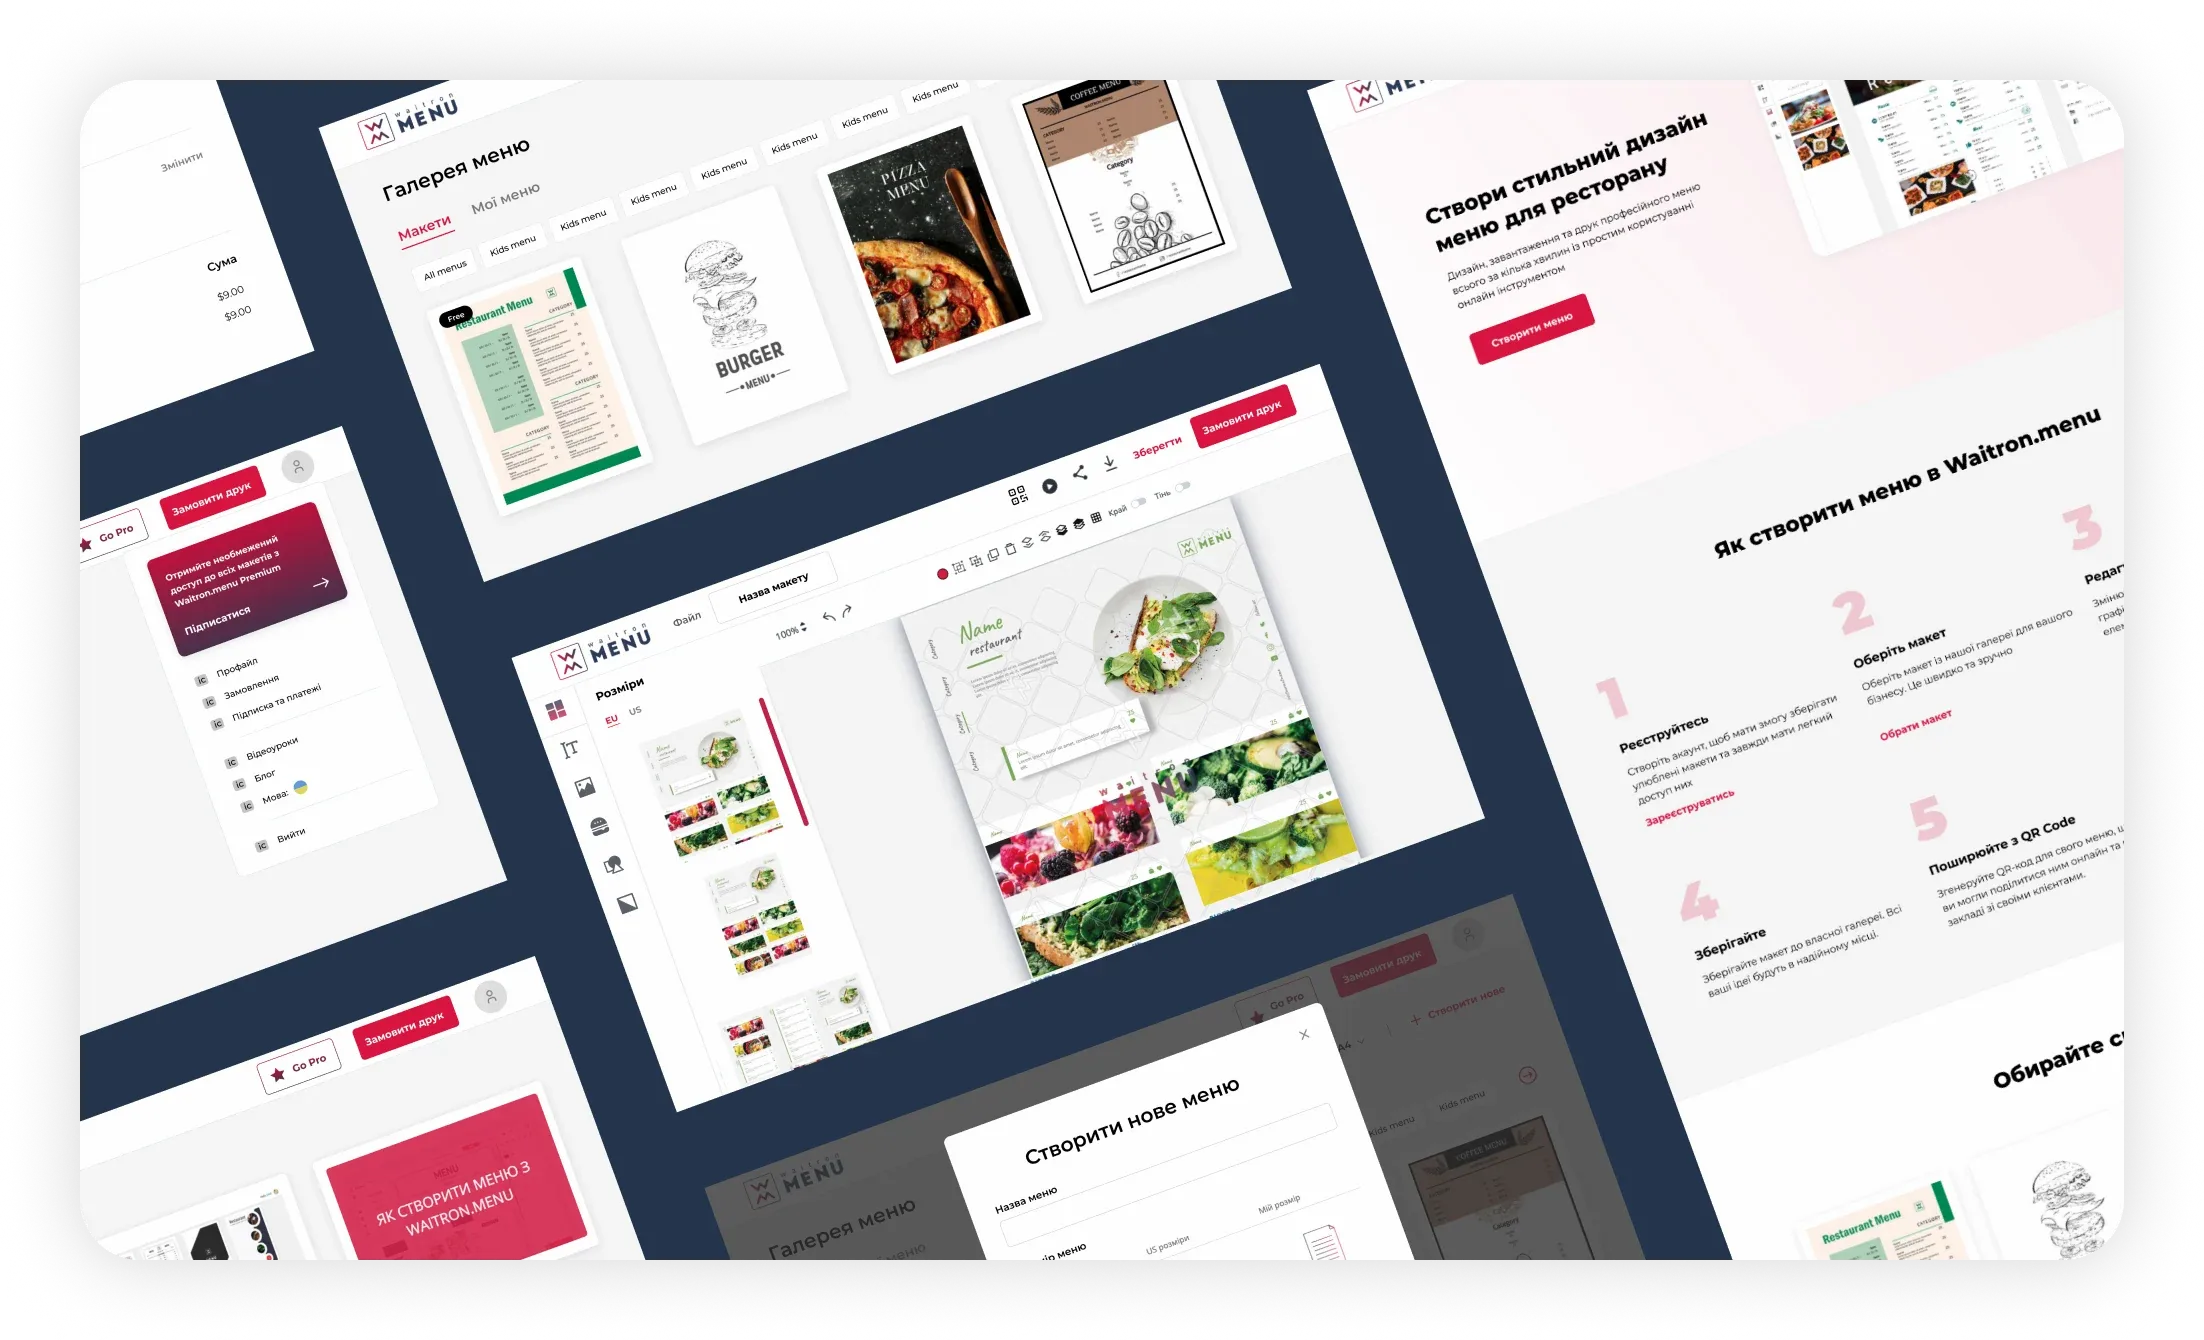 Online service for restaurant menu design